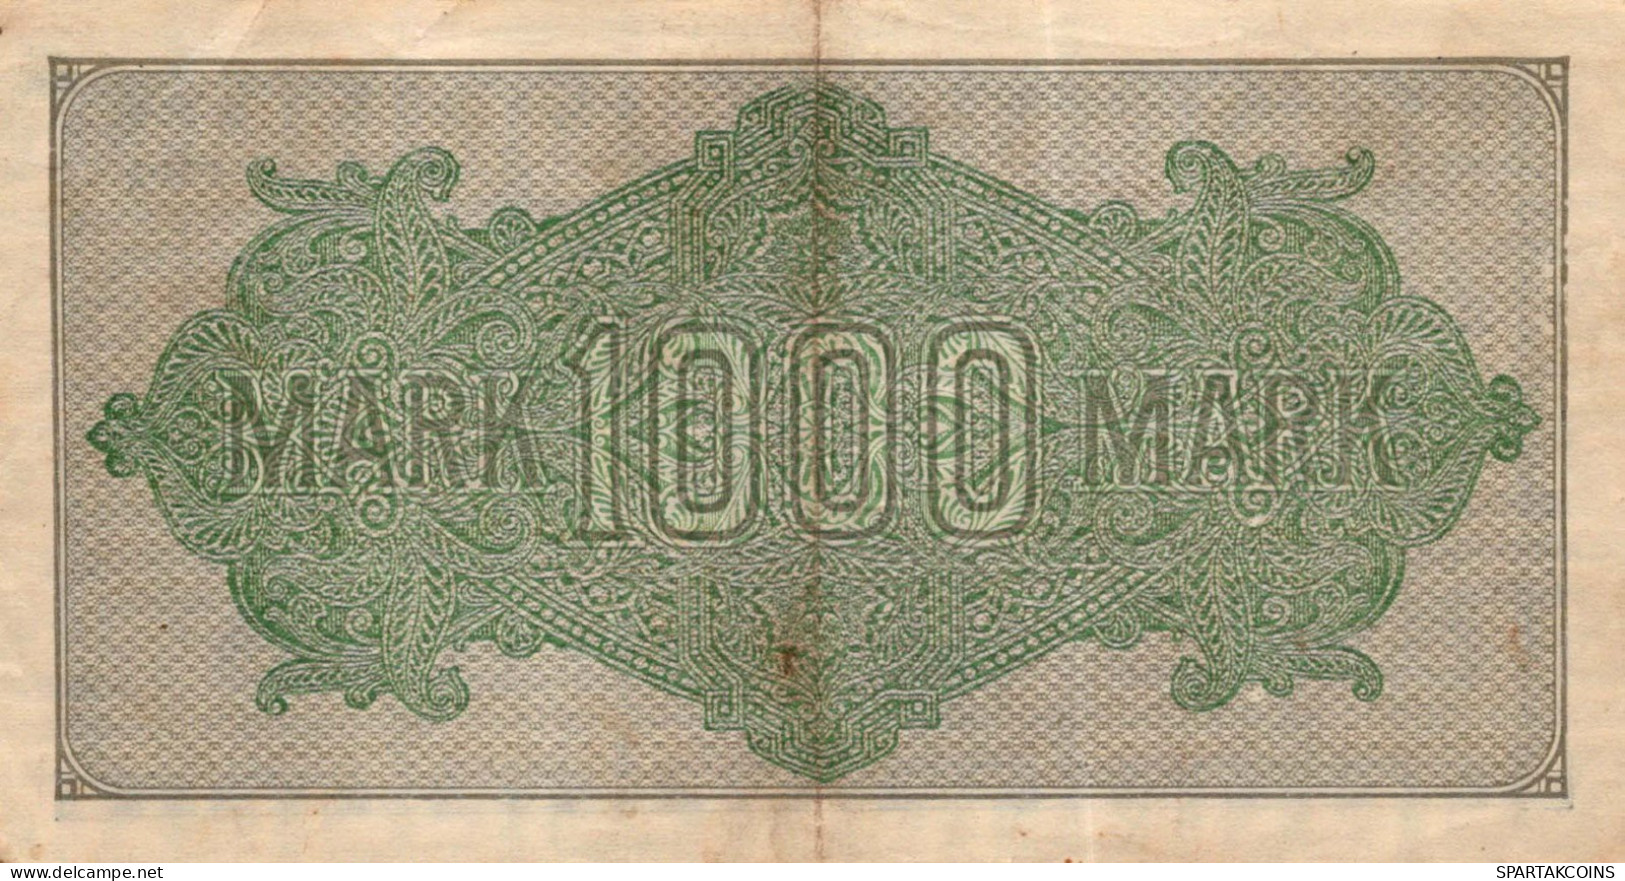 1000 MARK 1922 Stadt BERLIN DEUTSCHLAND Papiergeld Banknote #PL394 - [11] Local Banknote Issues